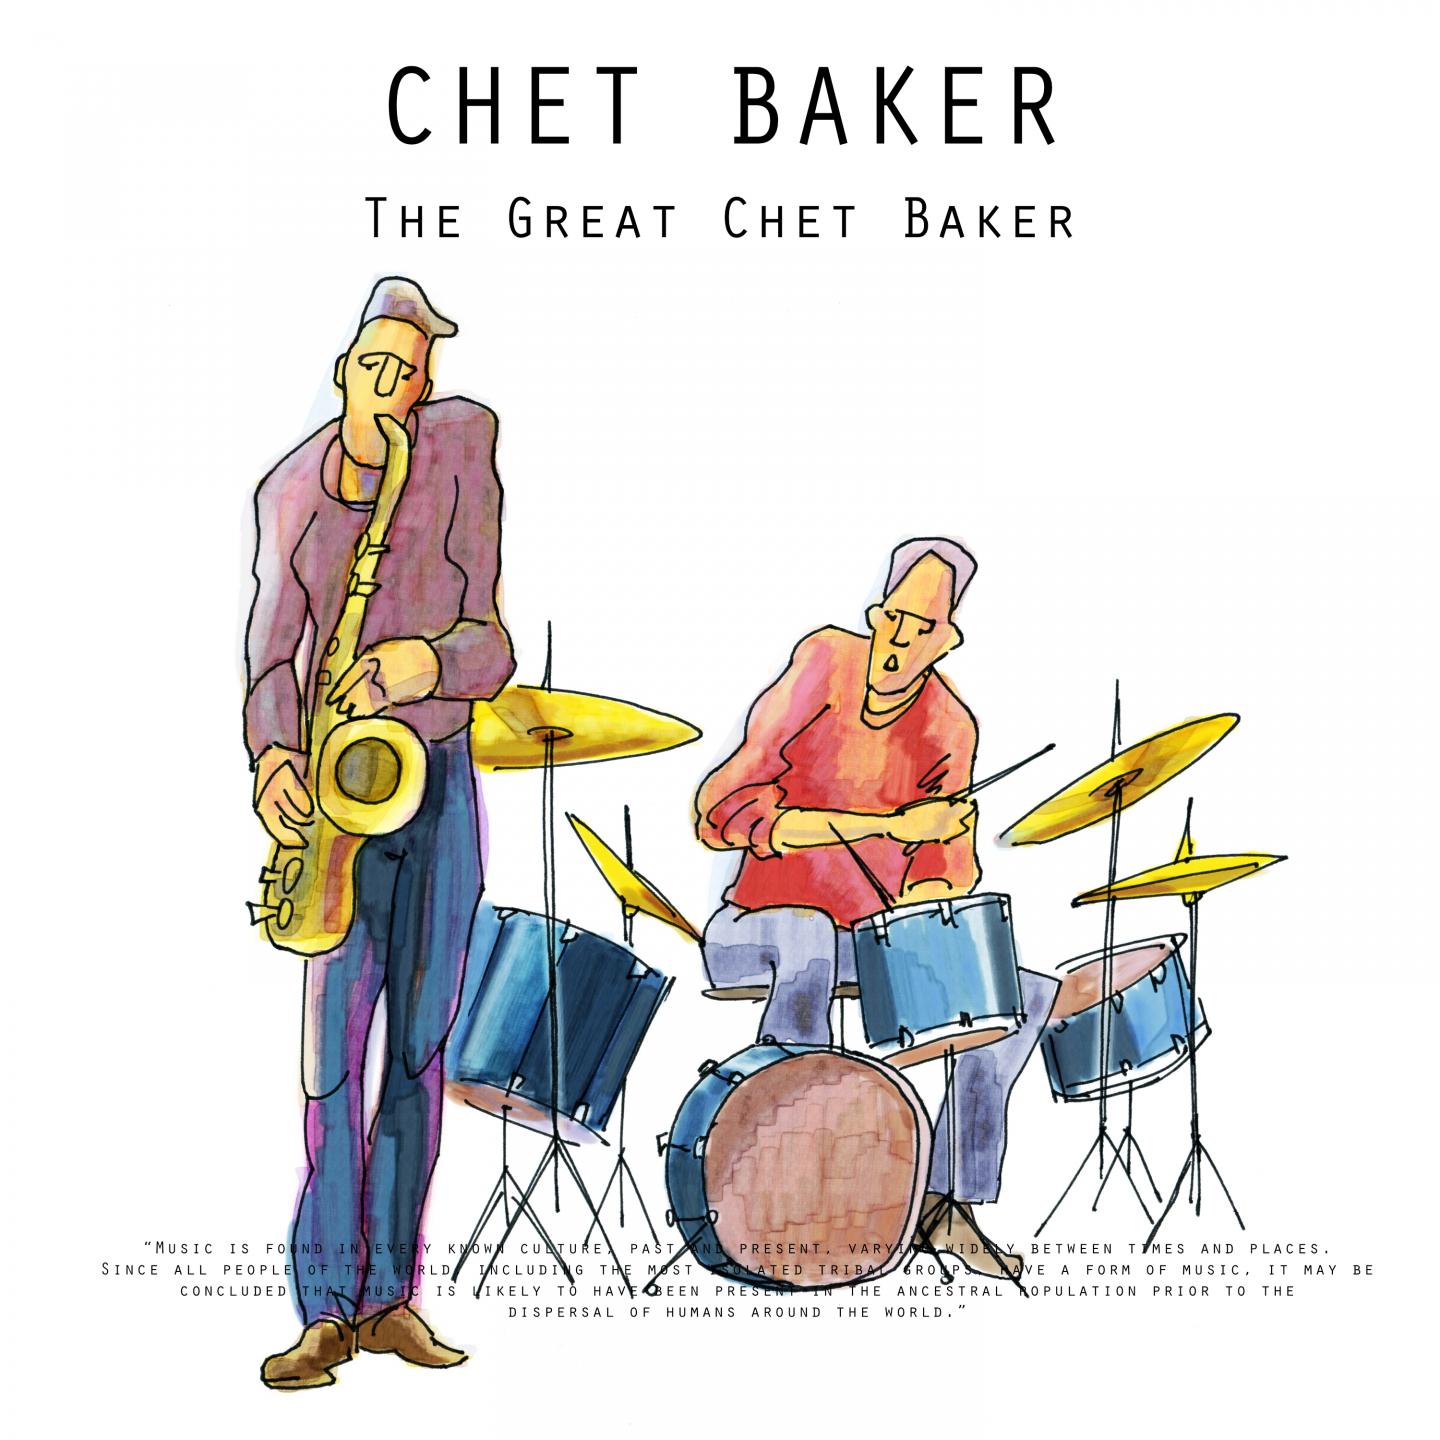 The Great Chet Baker